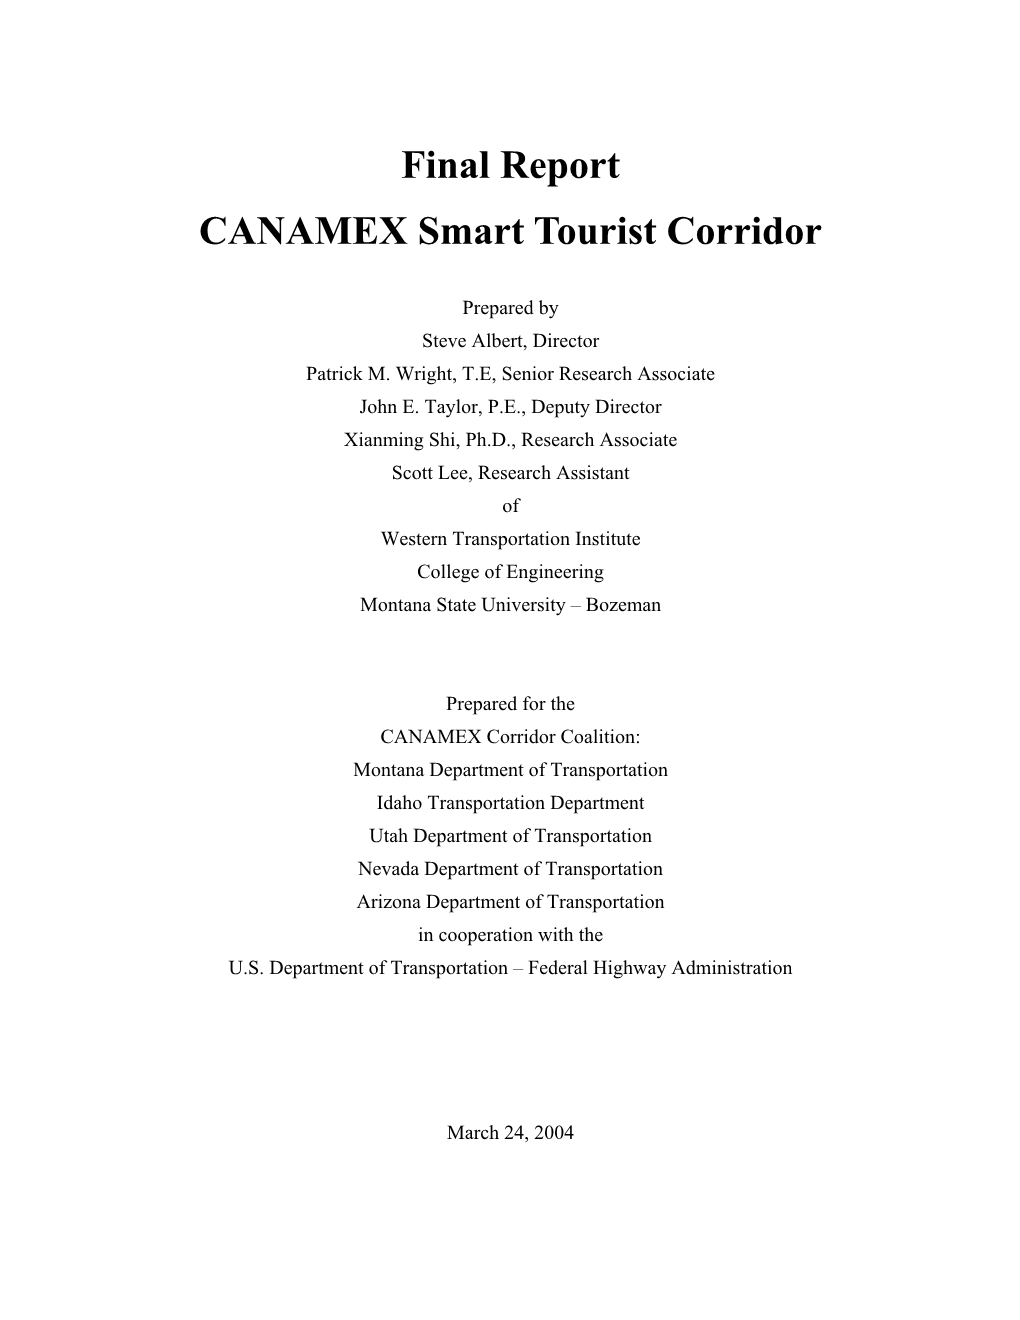 Final Report CANAMEX Smart Tourist Corridor